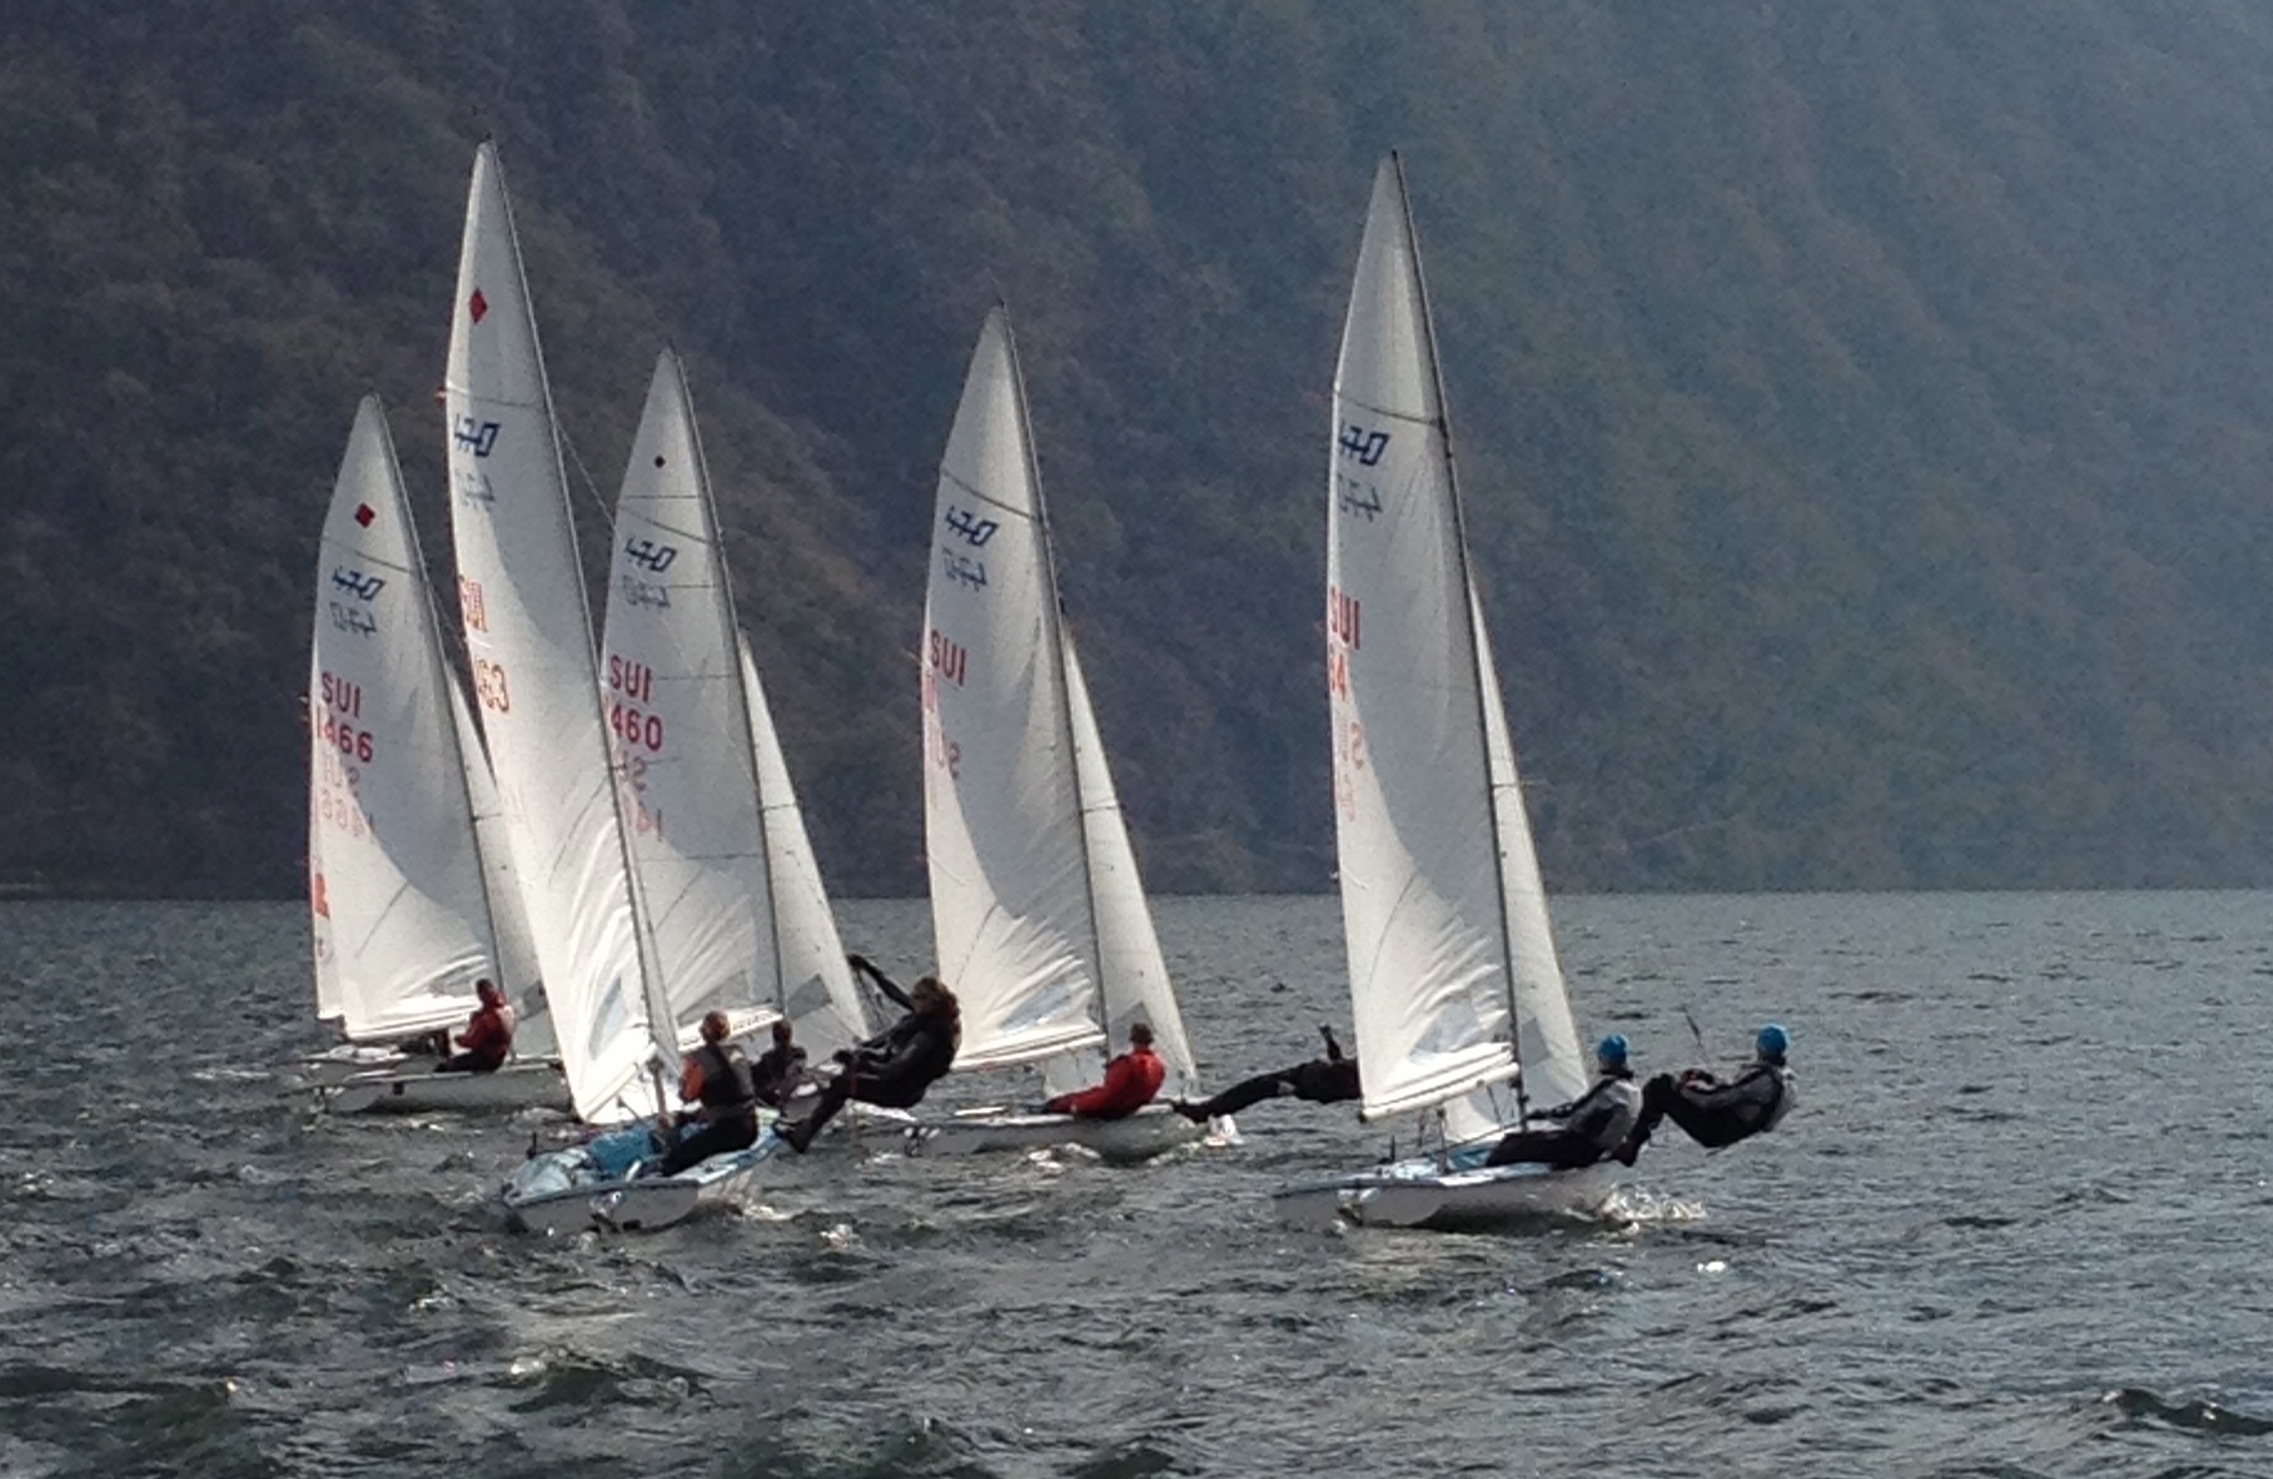  420, 470  Annual Points' Championship  CV Lago di Lugano  Day 1